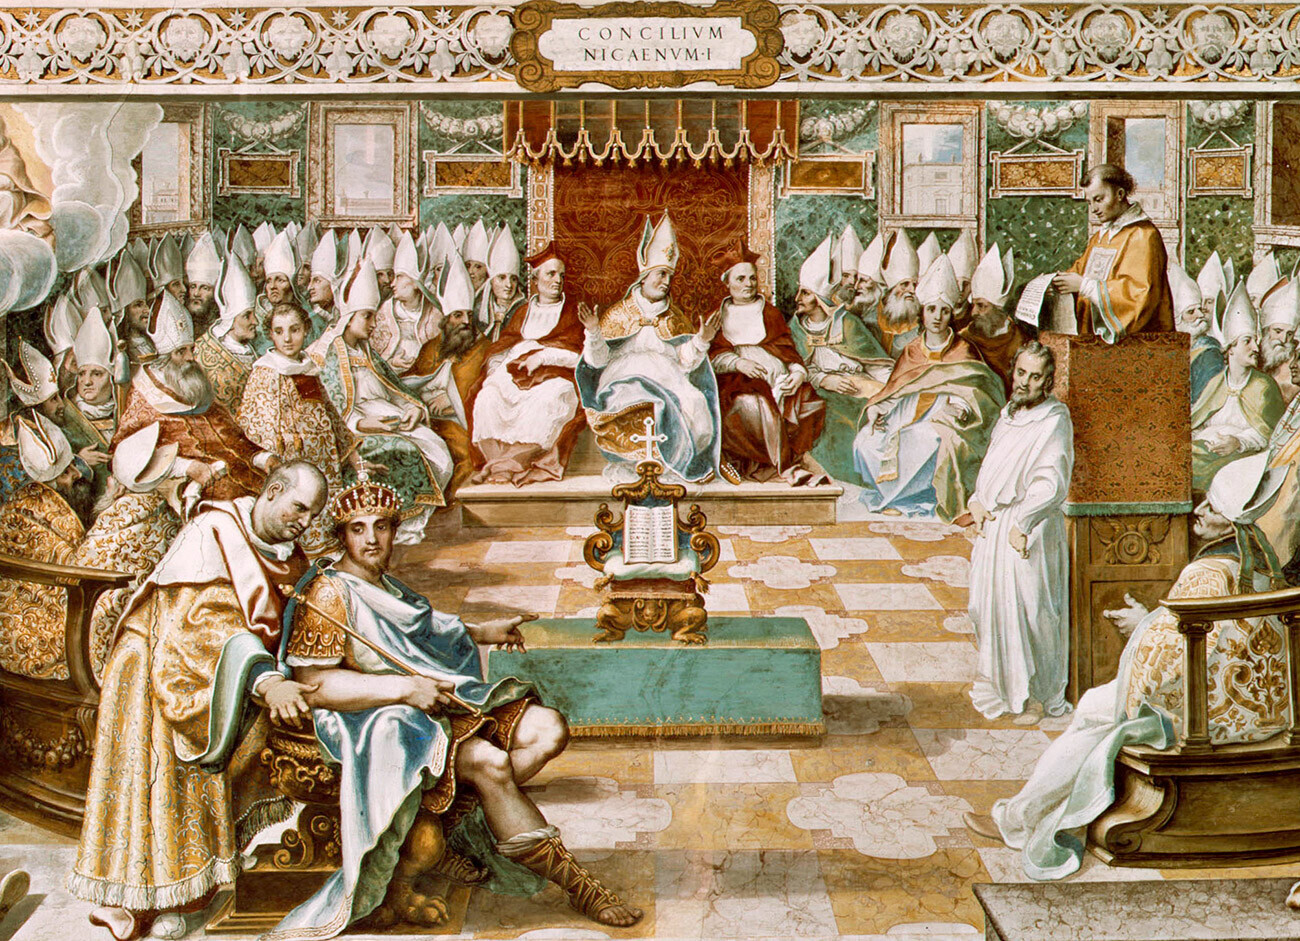 Првиот вселенски собор свикан 325 година во Никеја од царот Константин Велики

